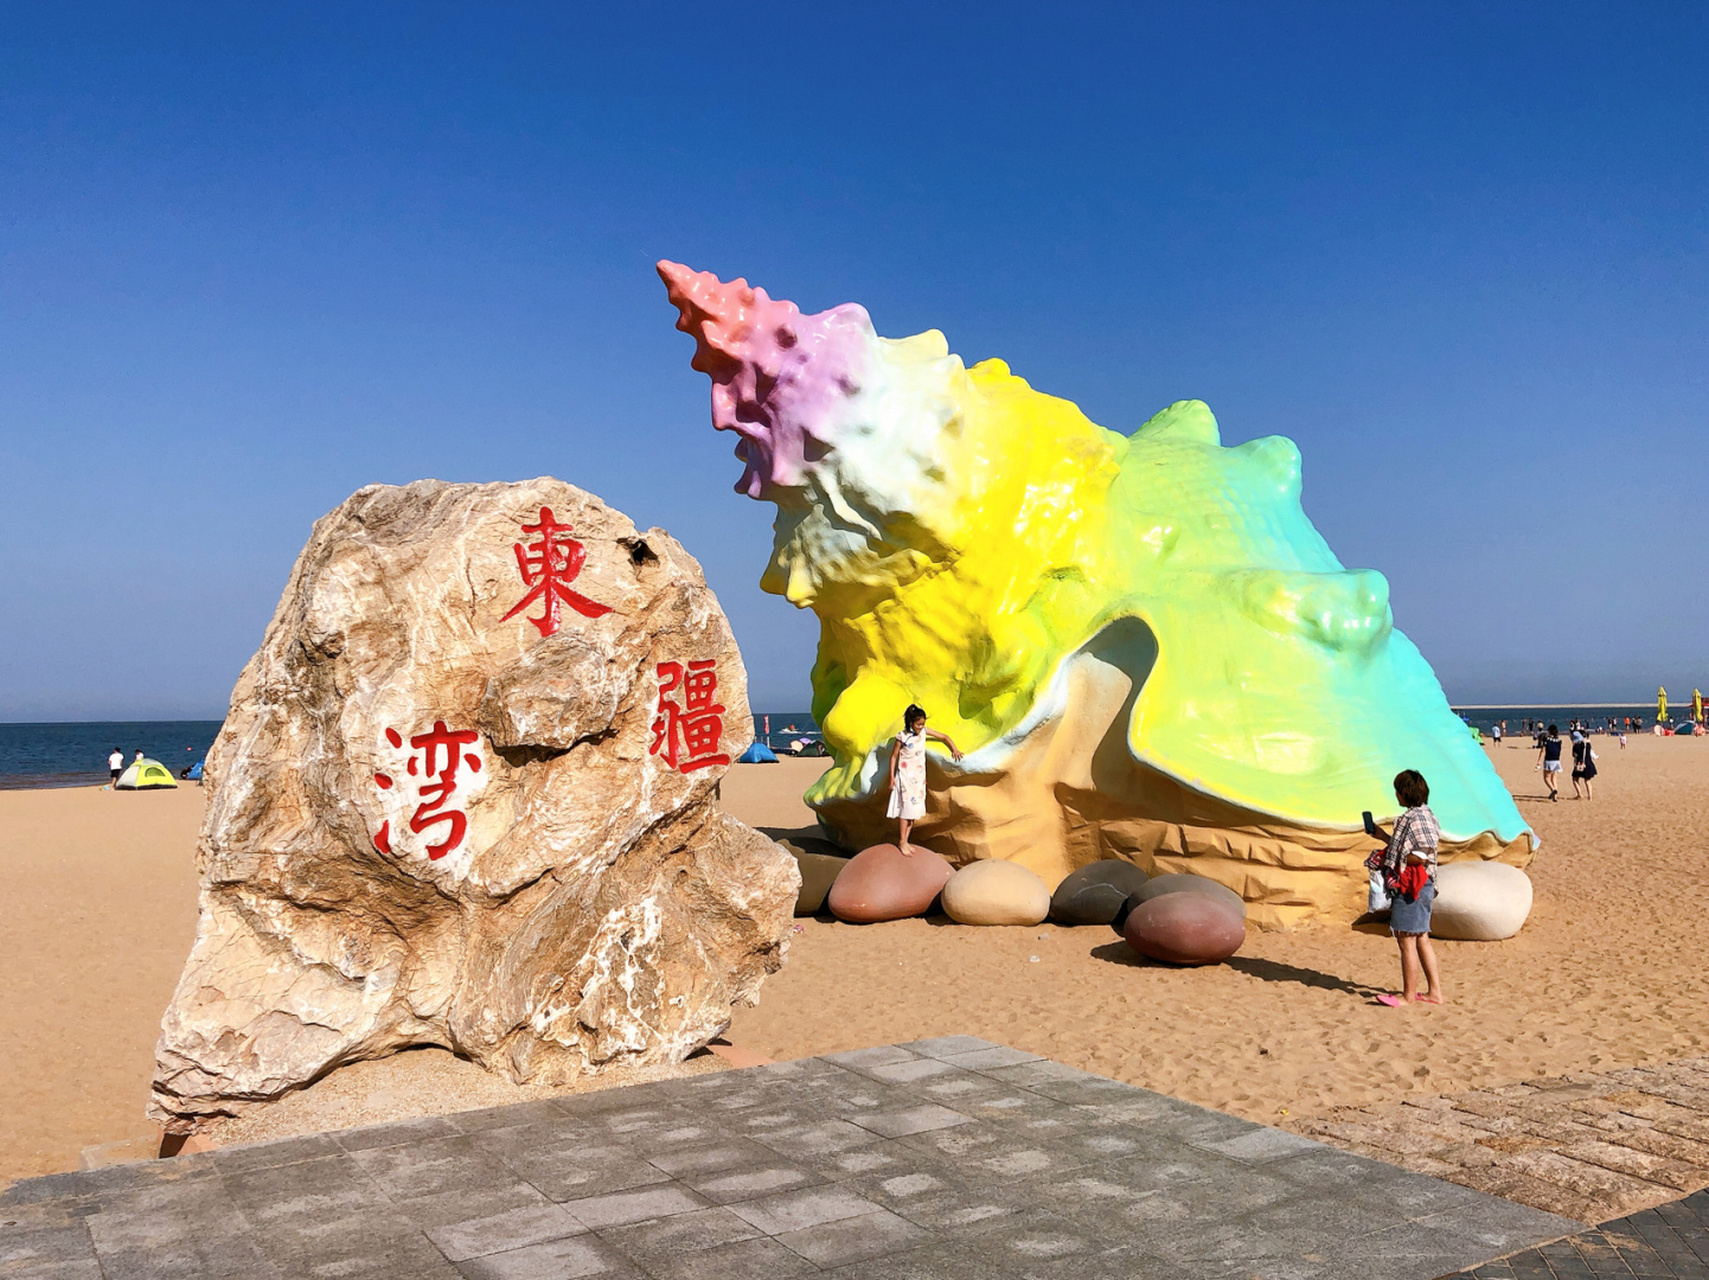 天津沙滩野餐好去处 92地点:天津东疆湾沙滩景区 定位:滨海新区观澜